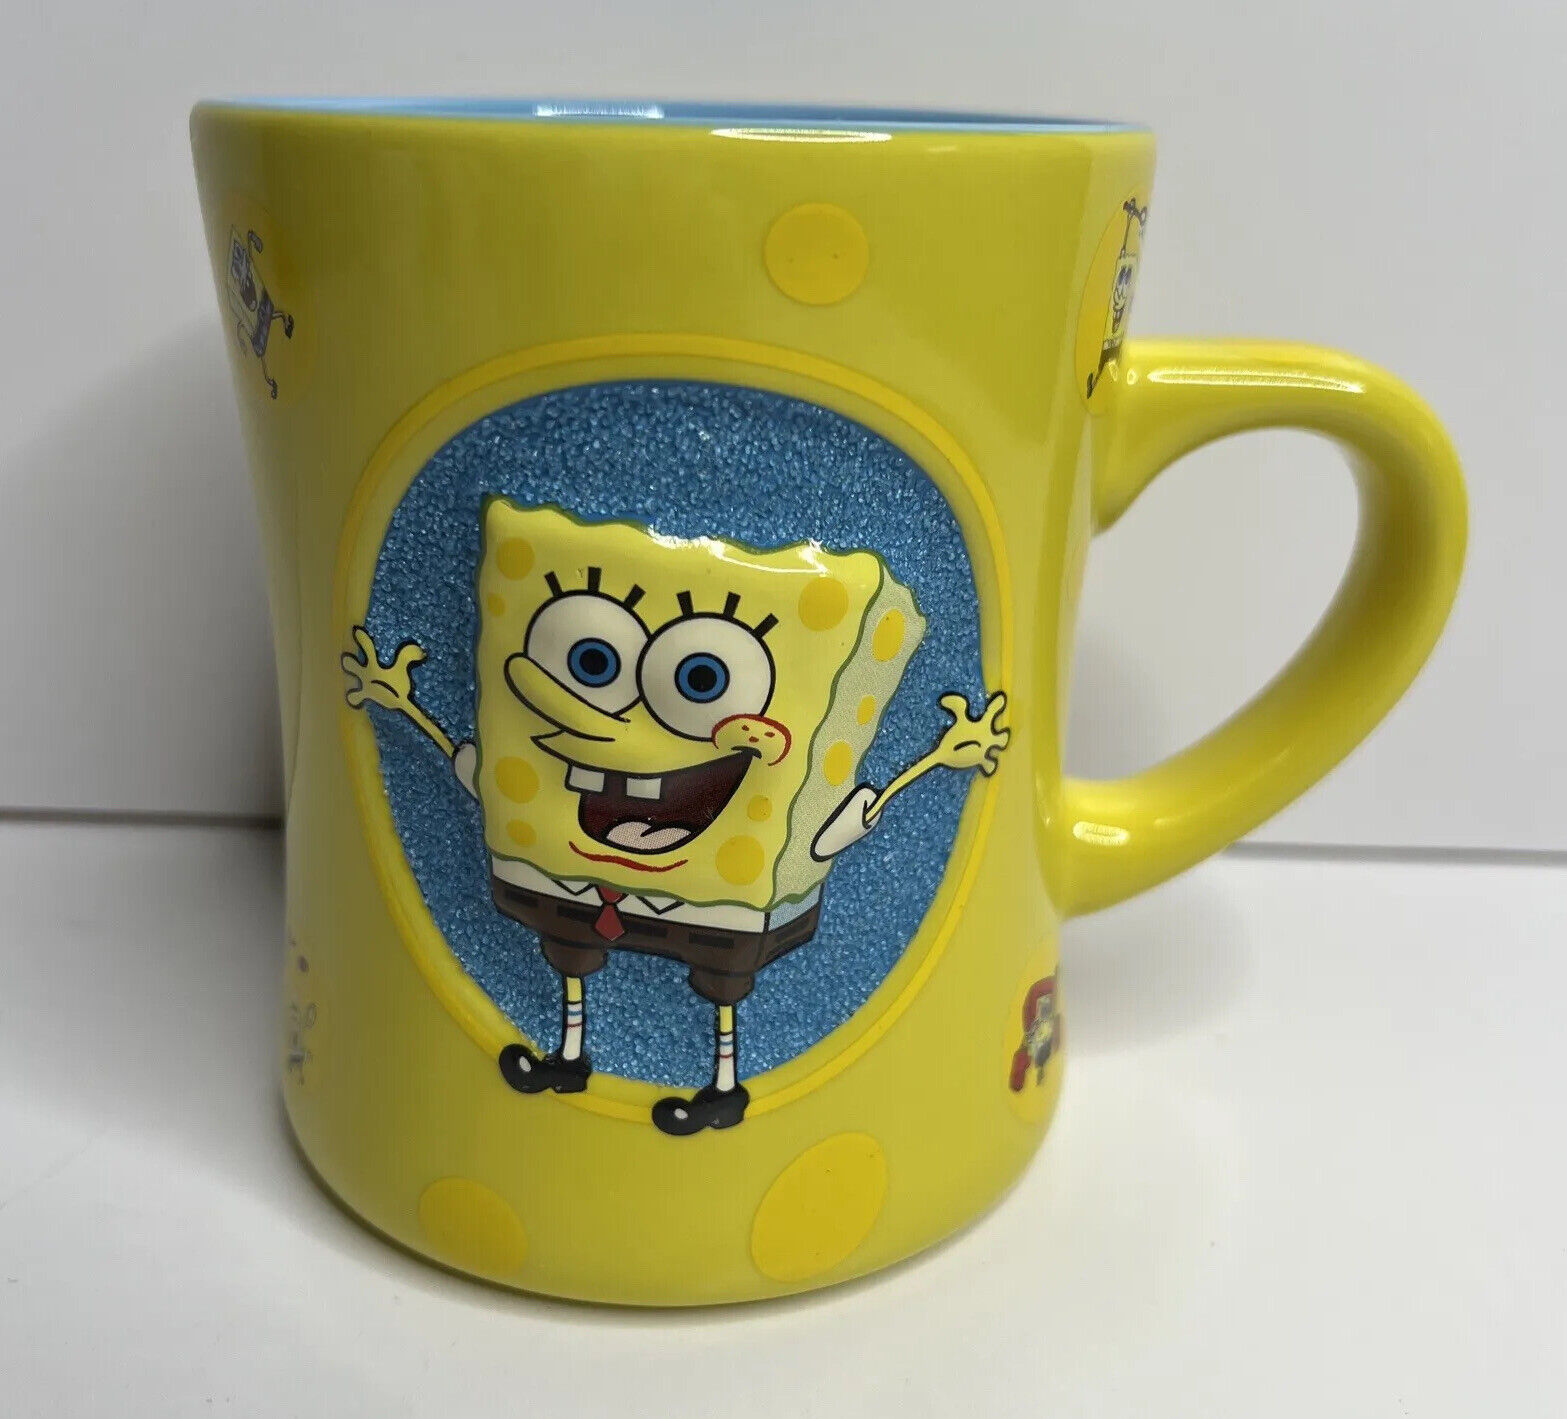 Spongebob Squarepants 2006 Yellow Embossed Ceramic Mug Universal Studios 16oz